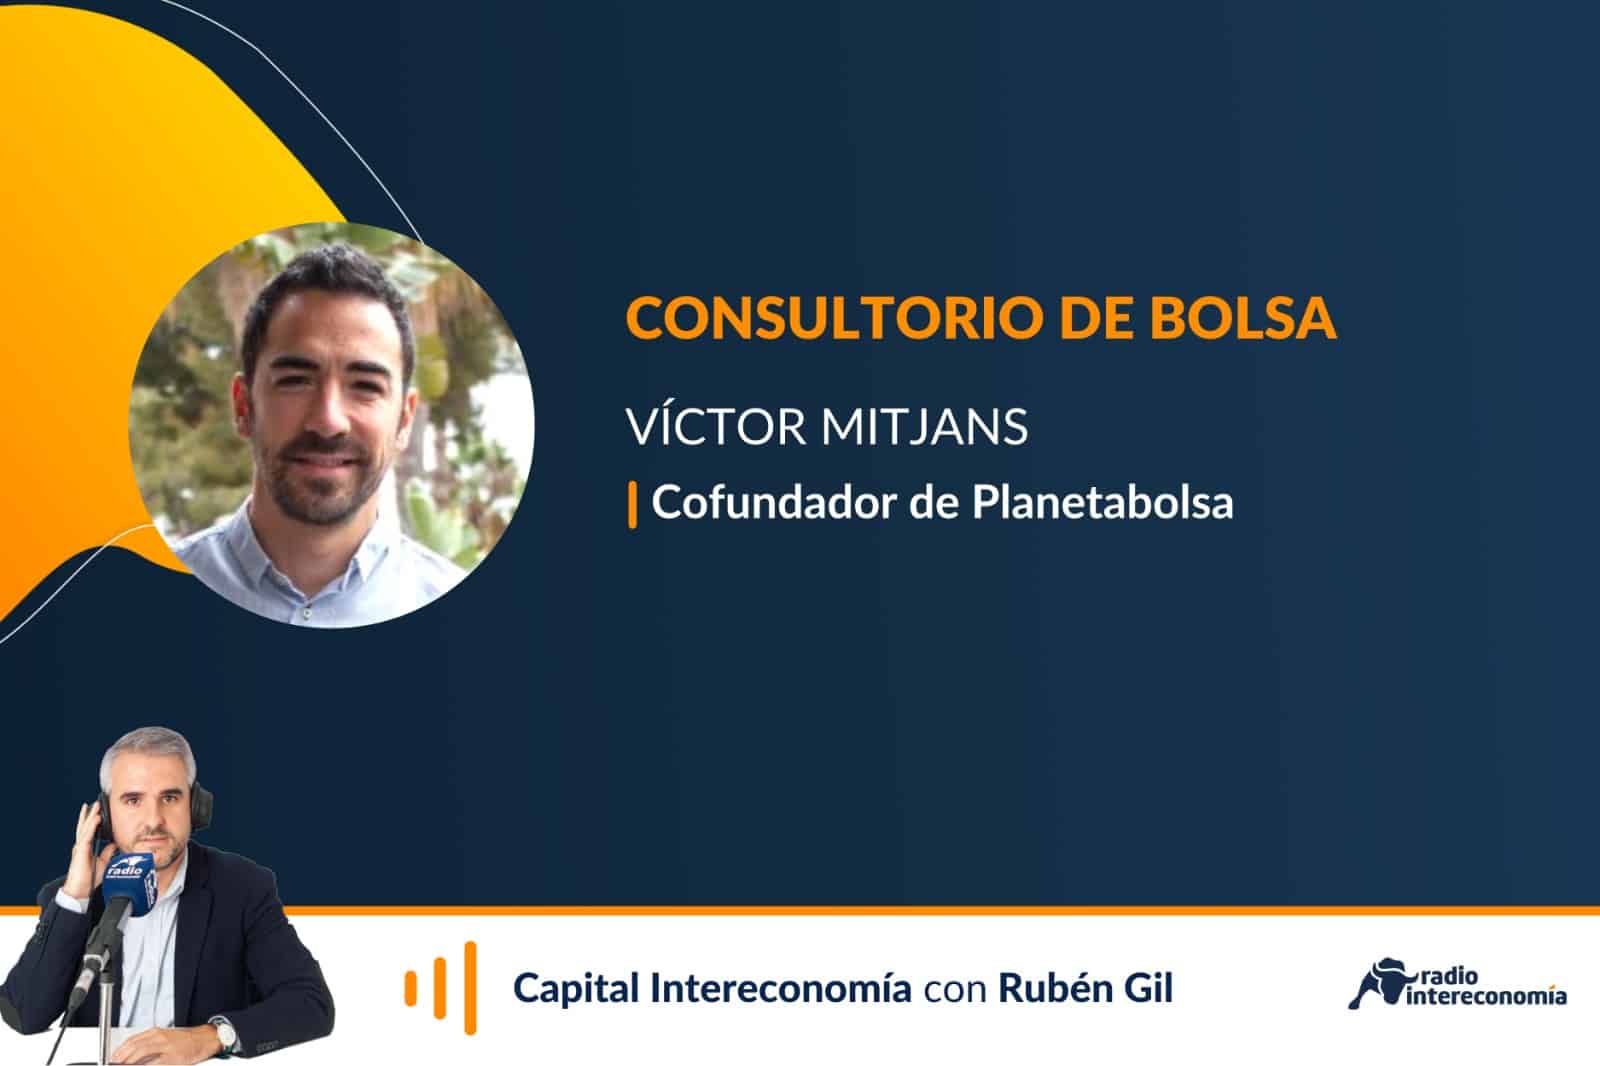 Consultorio de Bolsa con Víctor Mitjans (Planeta Bolsa)